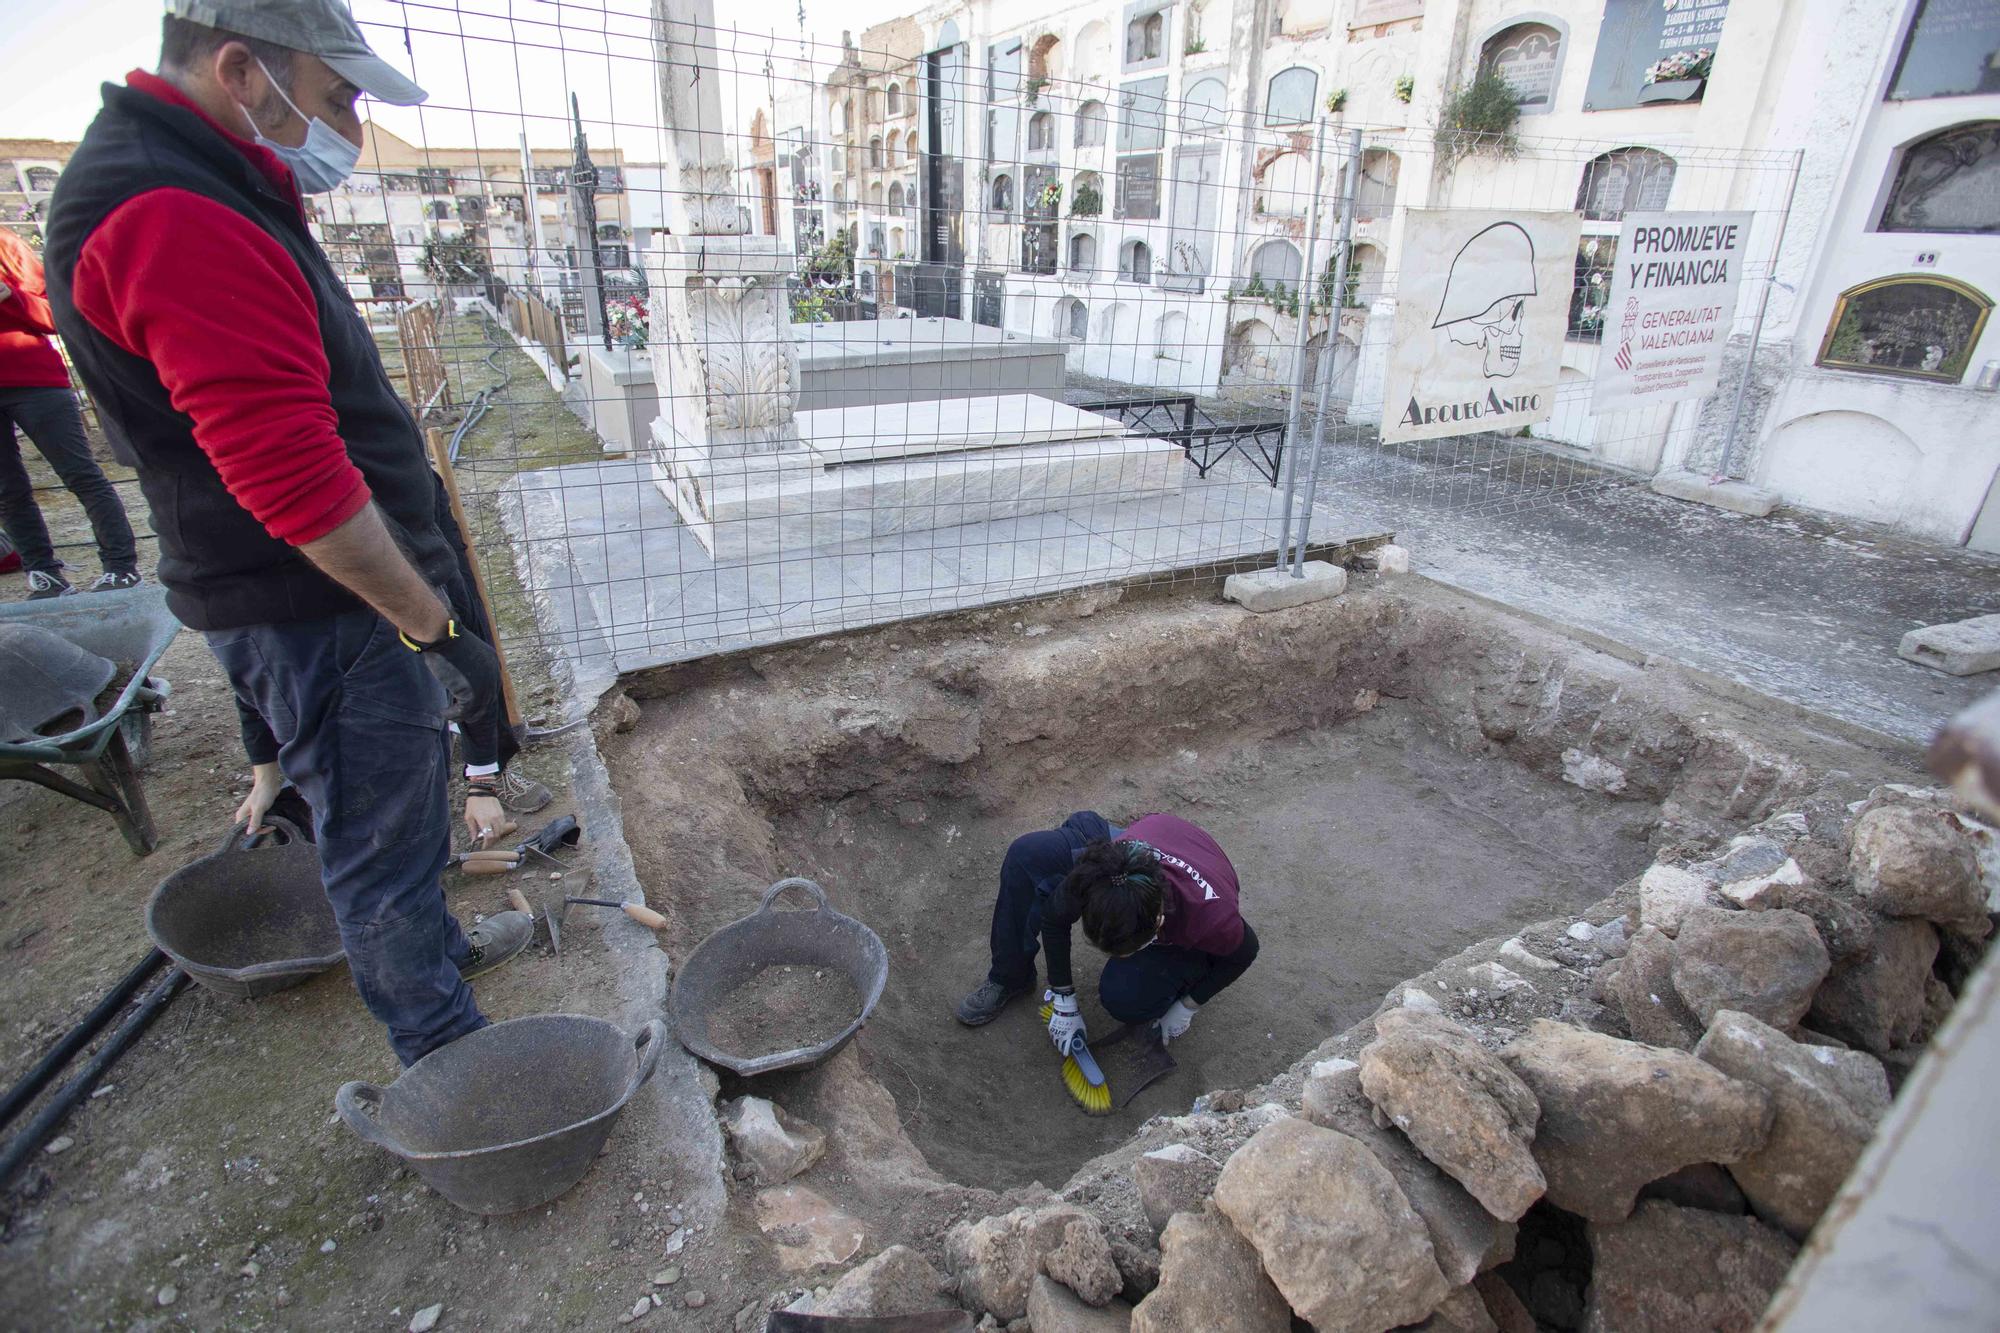 Comienzan los trabajos de exhumación en búsqueda de una fosa con nueve represaliados en Enguera